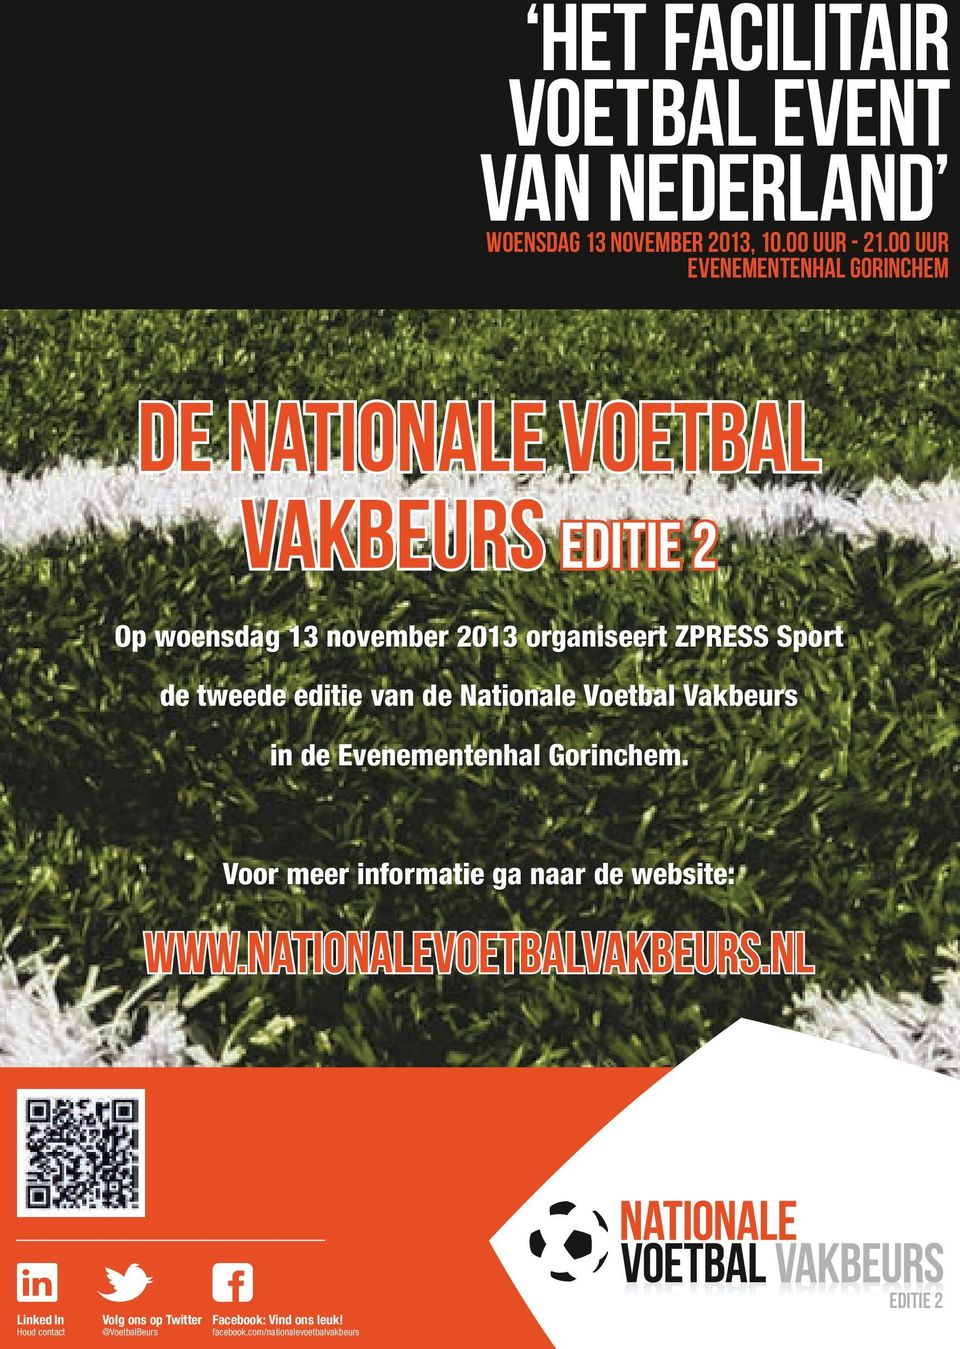 Sport de tweede editie van de Nationale Voetbal Vakbeurs in de Evenementenhal Gorinchem.